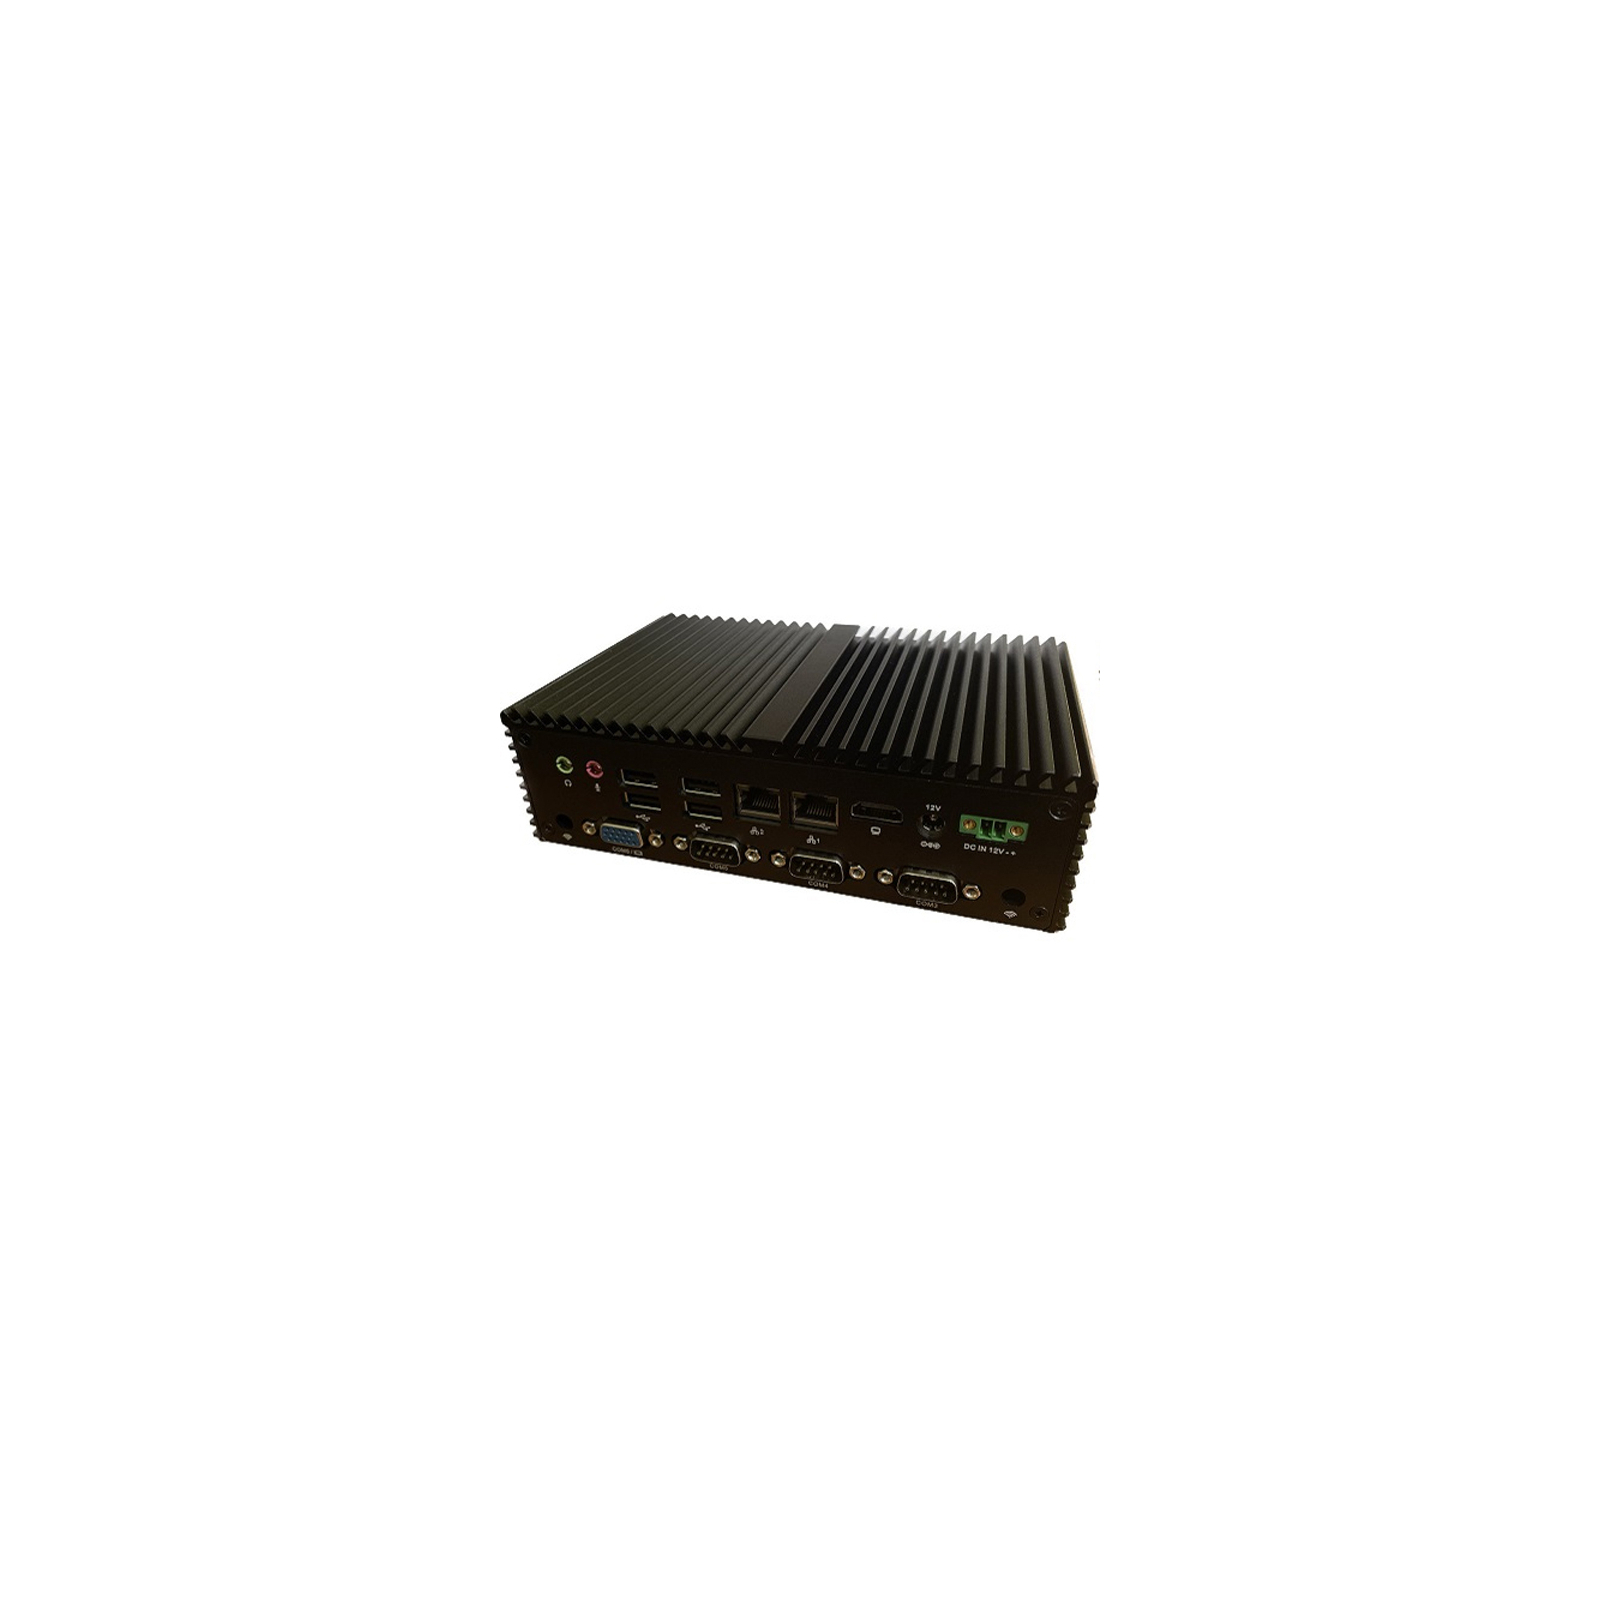 Промисловий ПК Itanium K790X Celeron J6412/8GB/256GB/8xUSB/5xRS232/Ethernet (K790X)